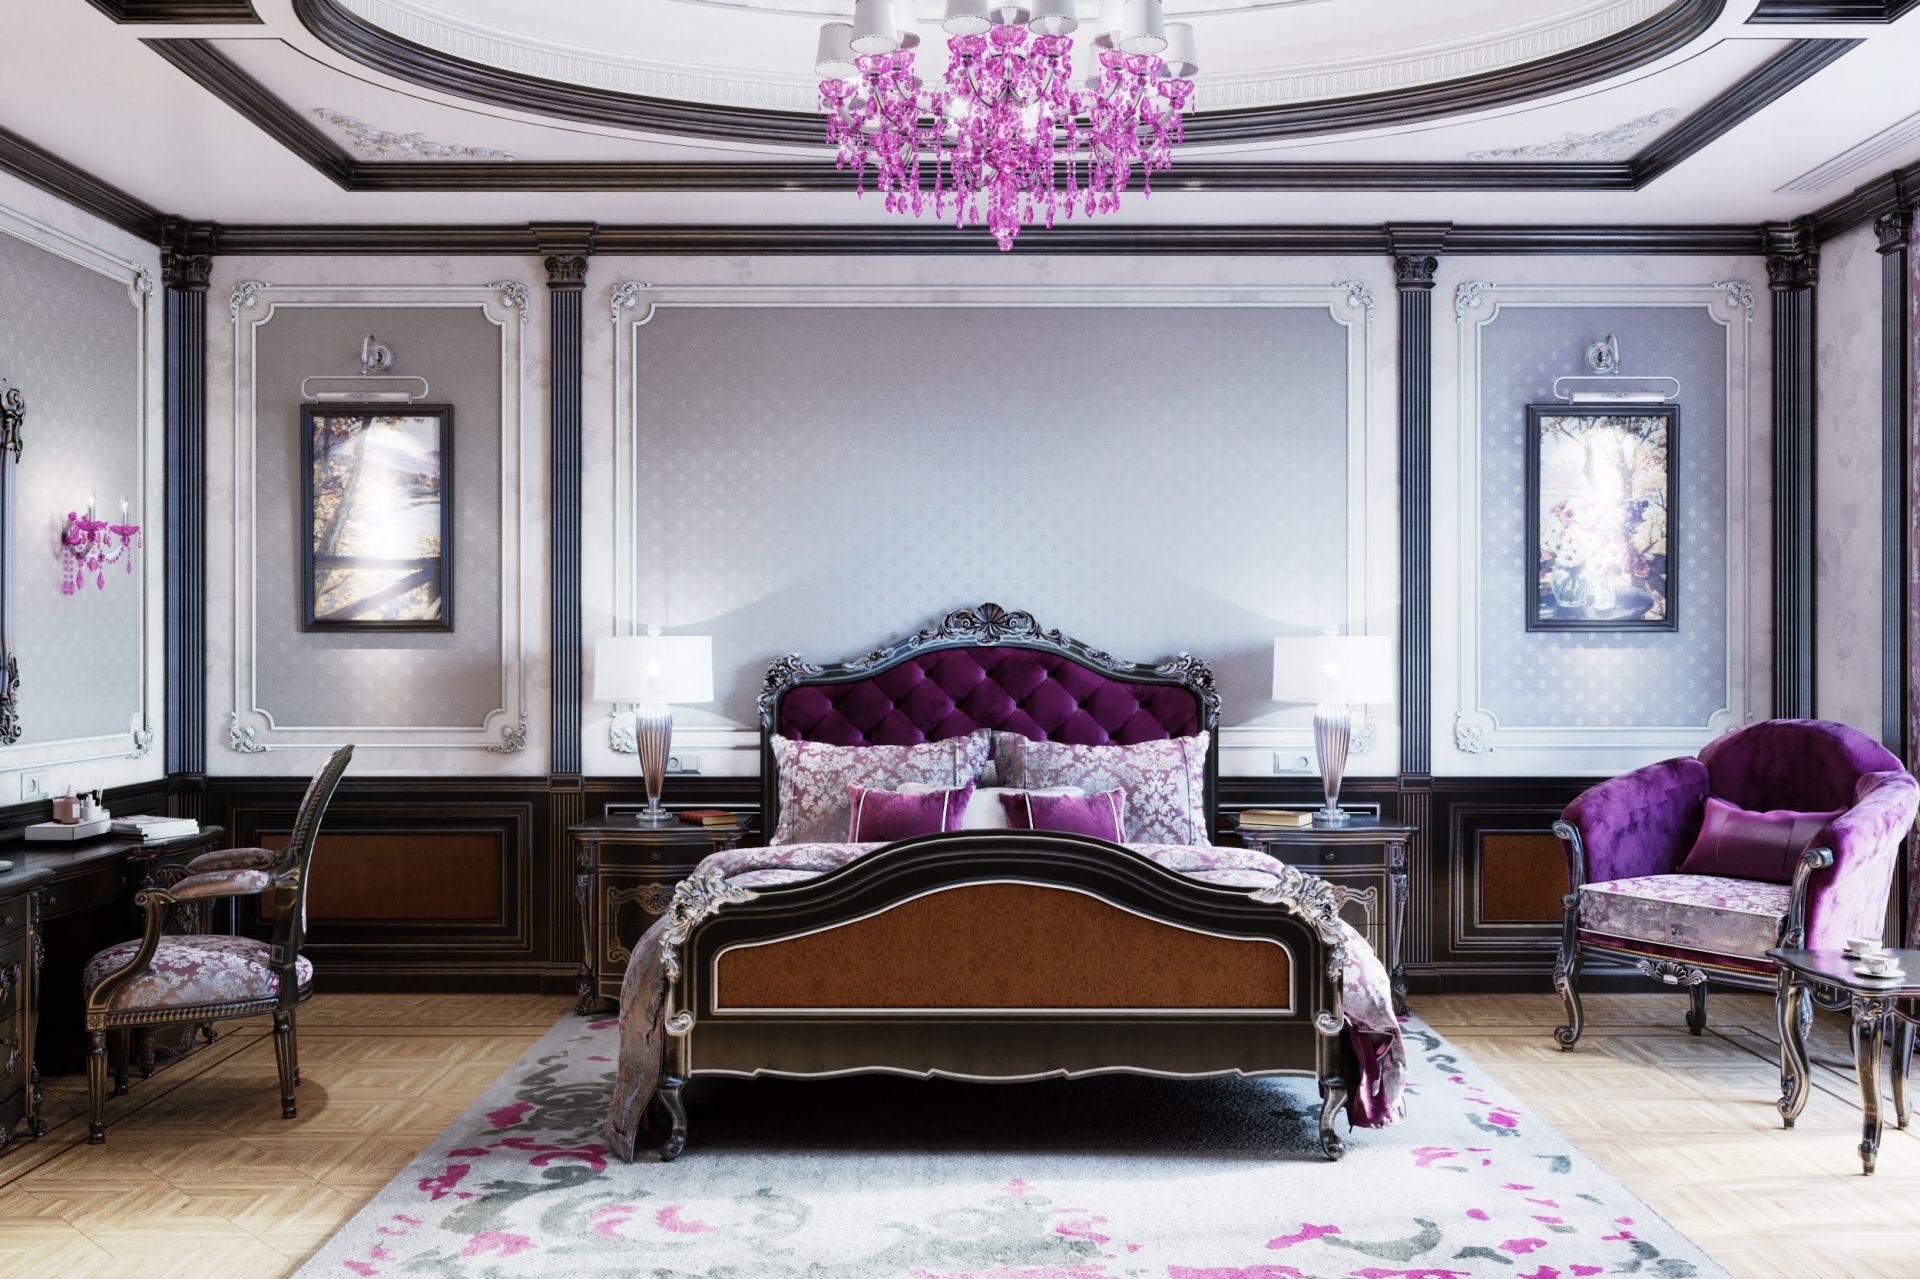 Violet bedroom